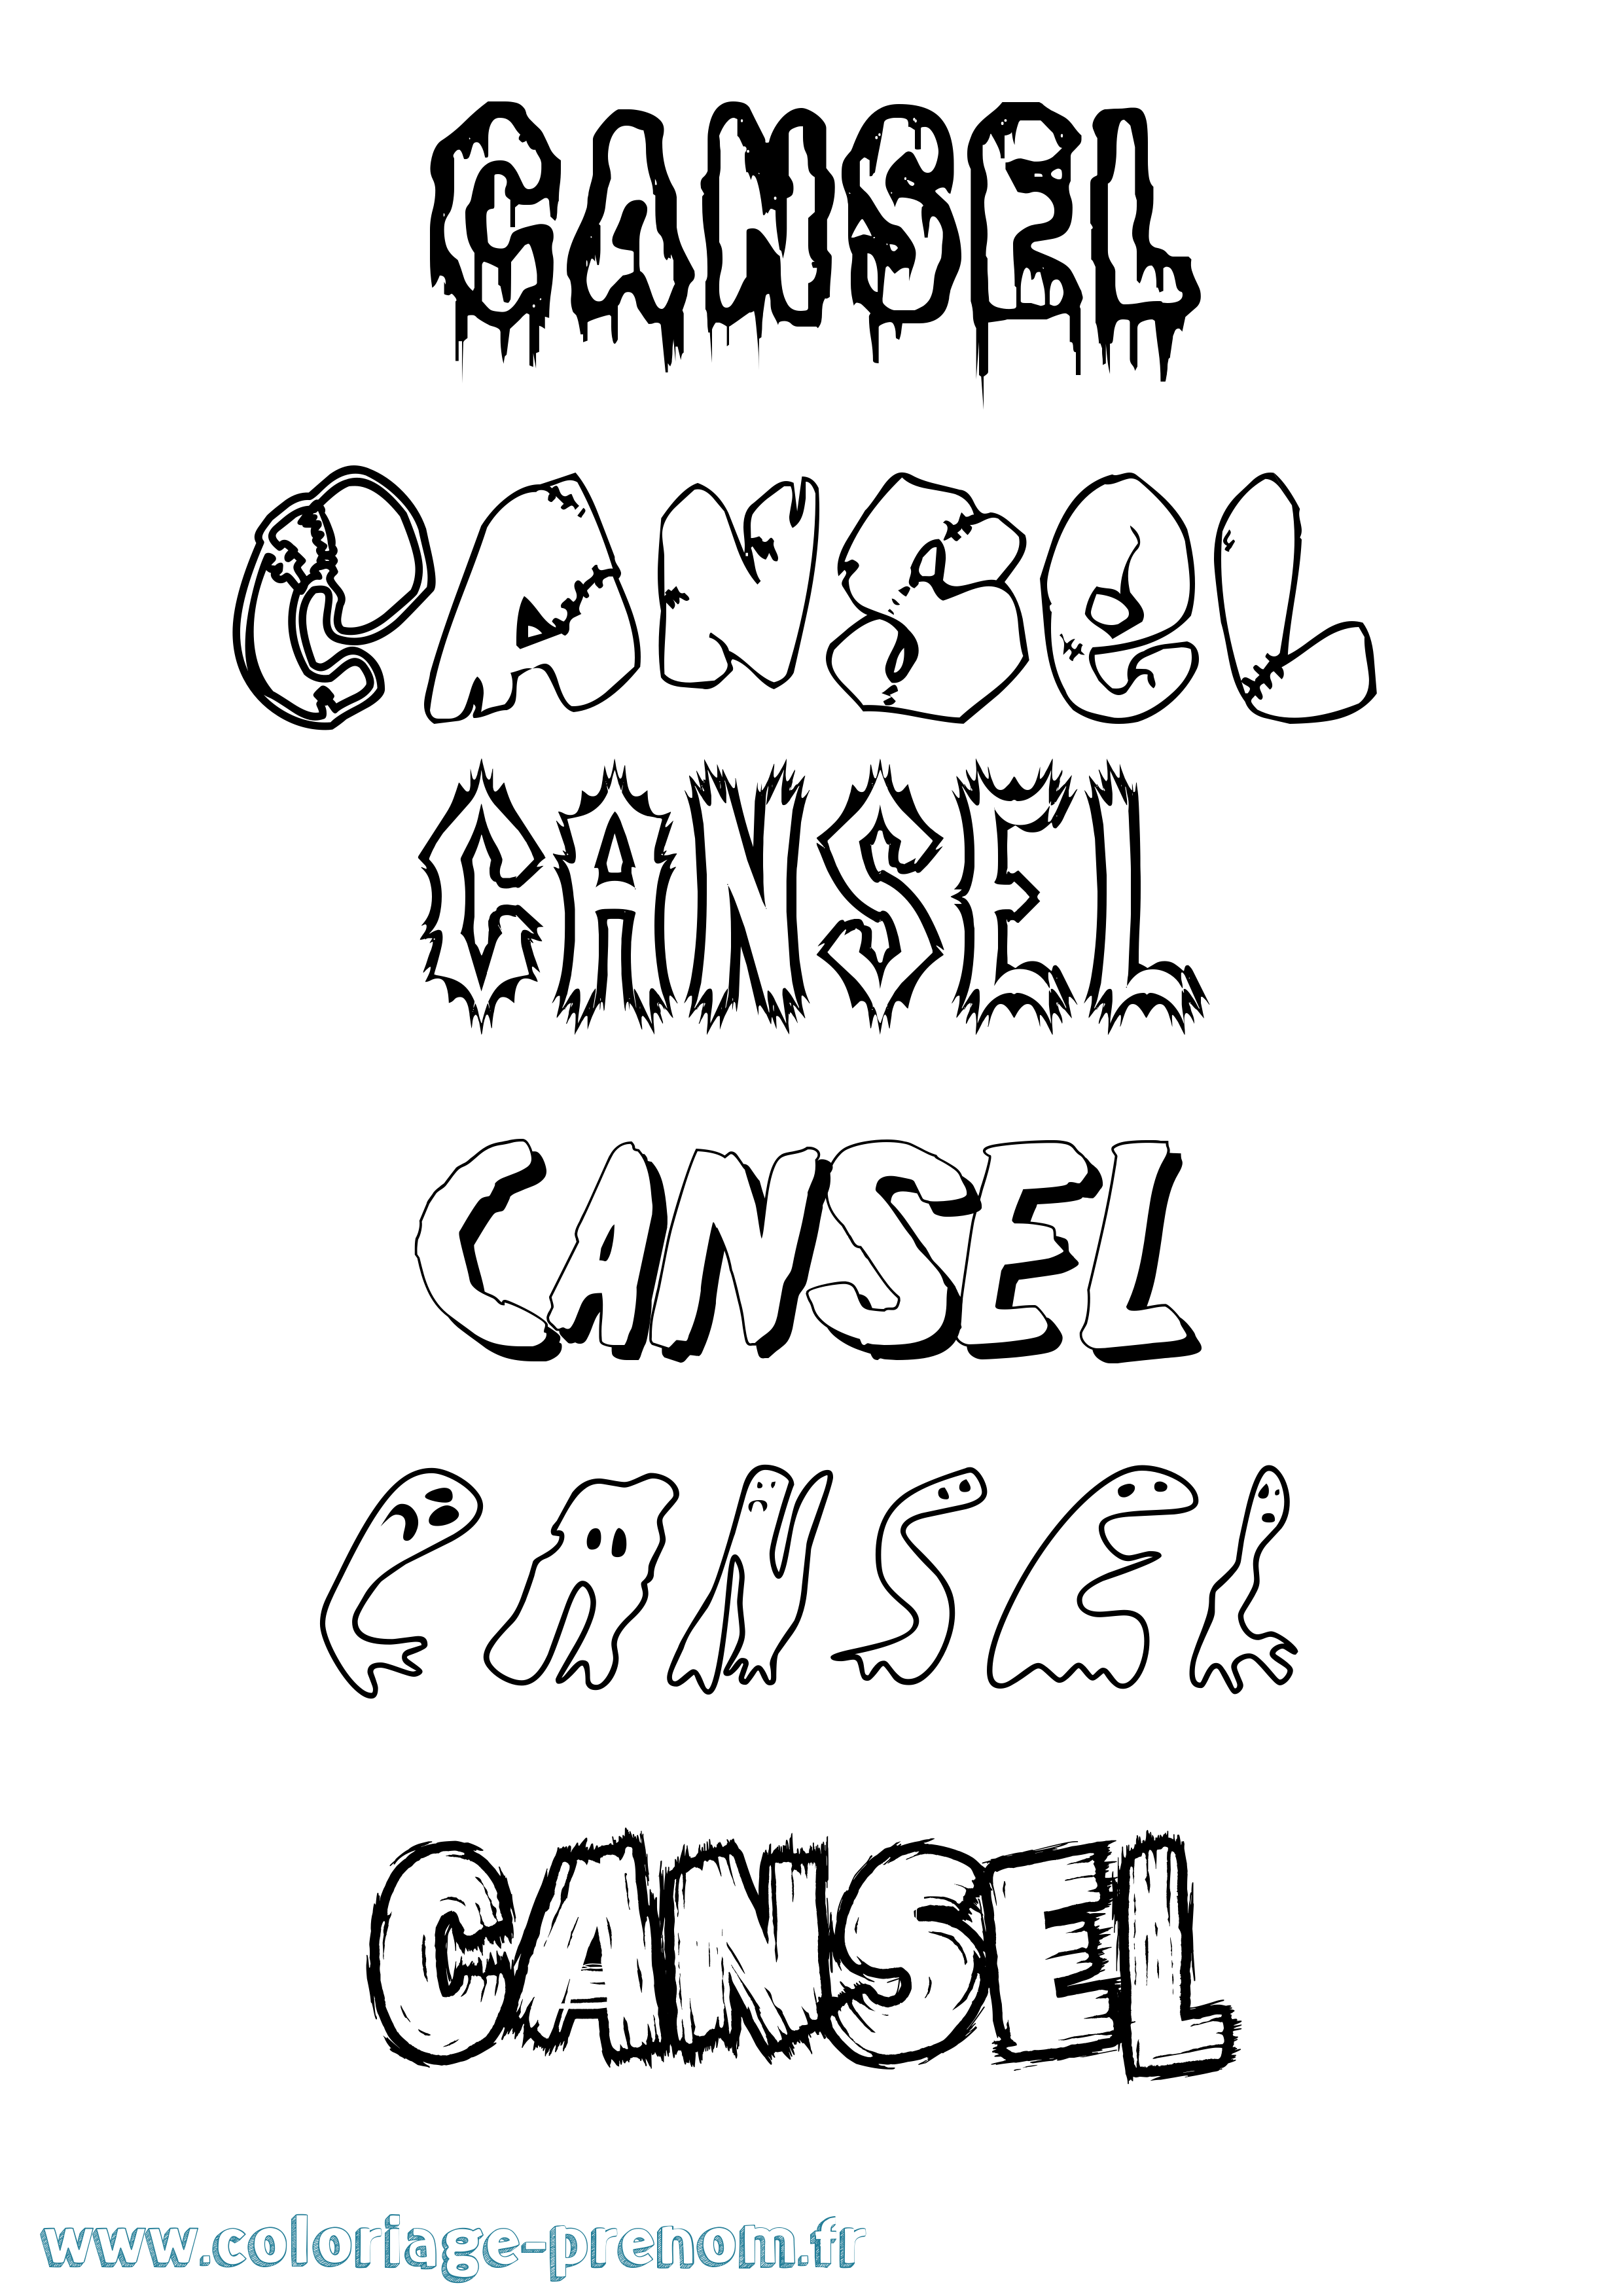 Coloriage prénom Cansel Frisson